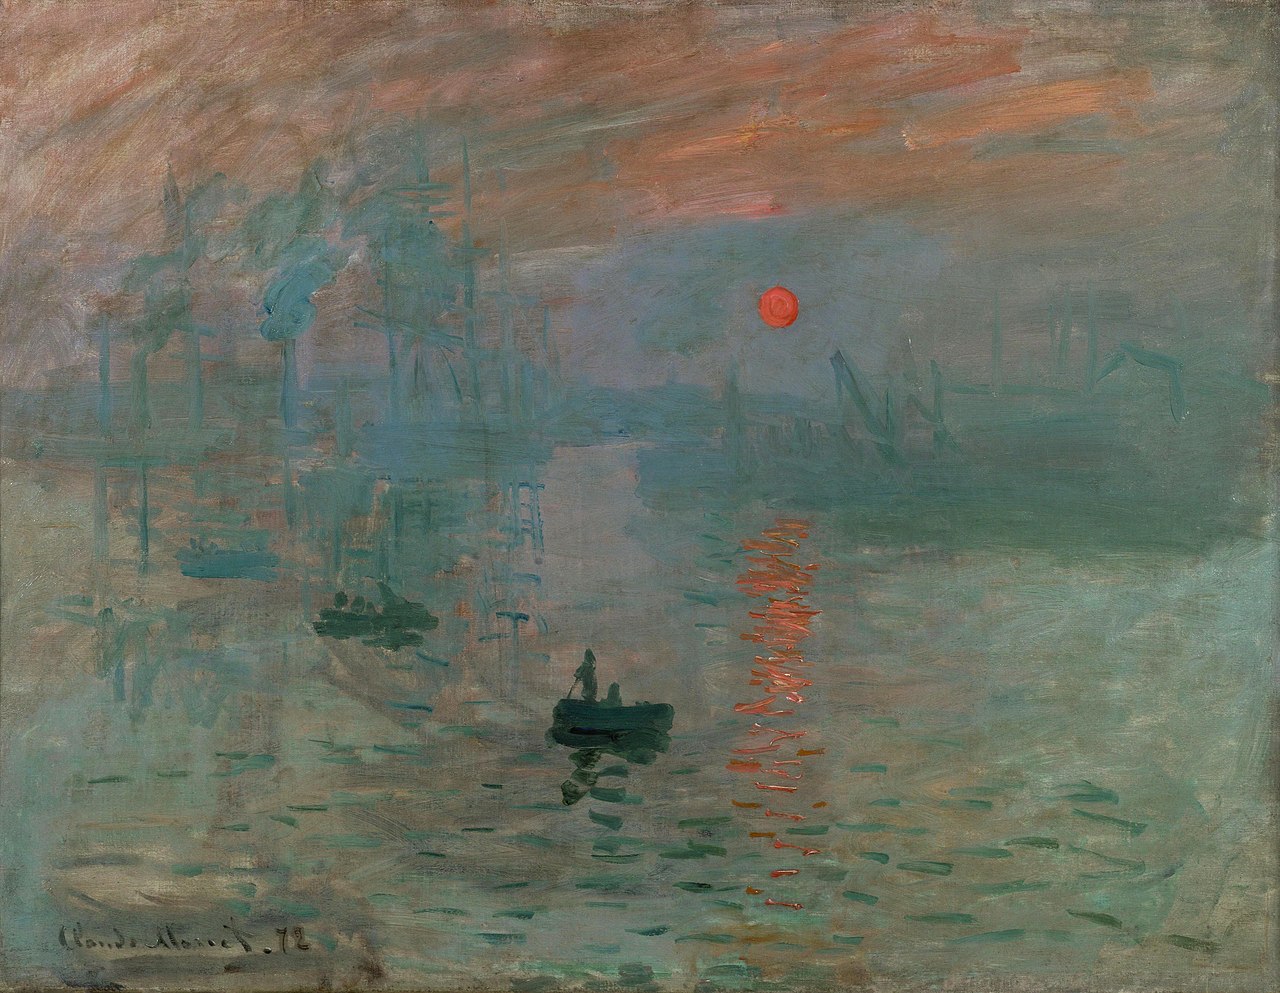  Claude Monet, Impression Sunrise, 1872, Musée Marmottan Monet, Paris